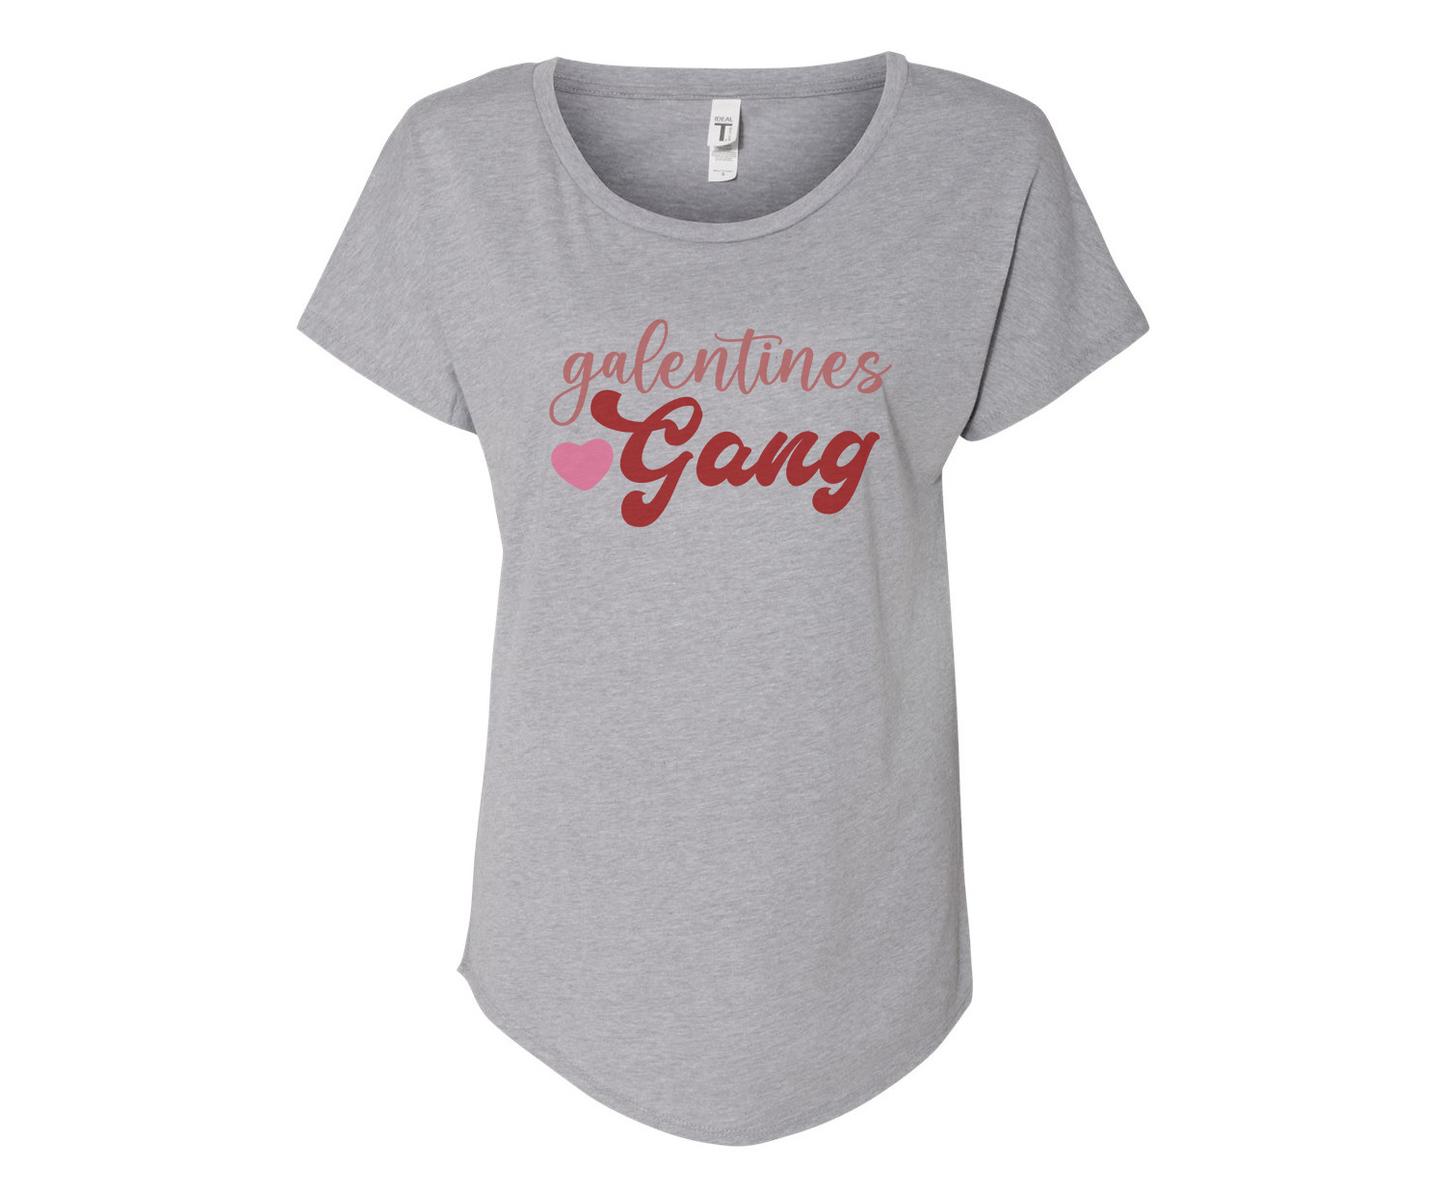 Galantine Gang Ladies Tee Shirt - In Grey & White